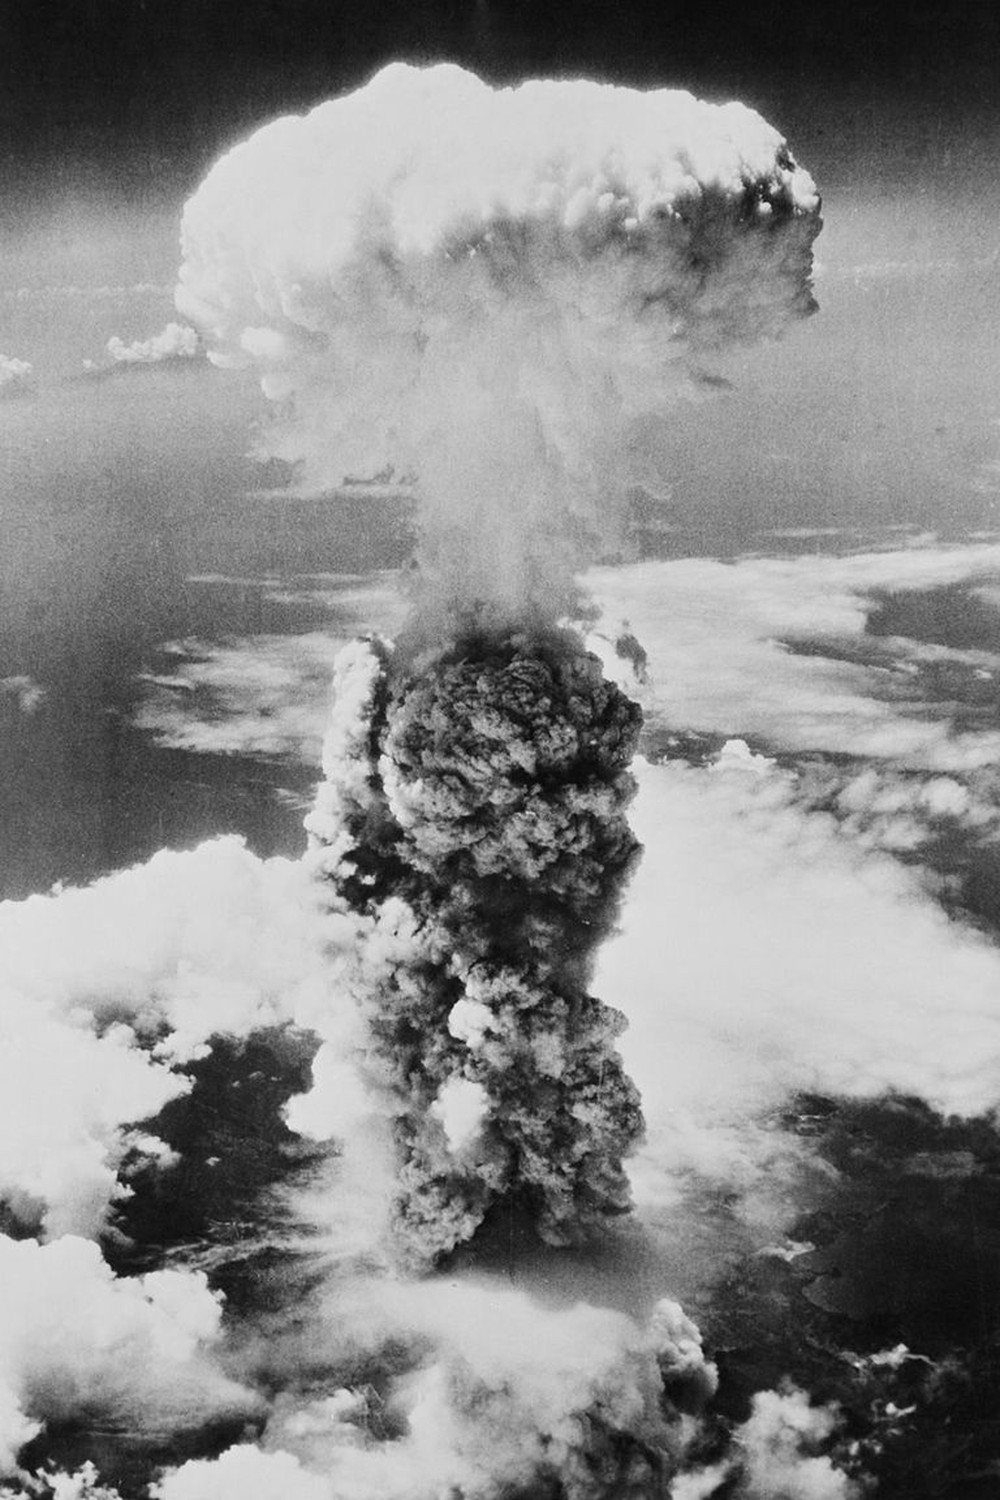 74 năm sau thảm họa bom nguyên tử: Thành phố Hiroshima và Nagasaki hồi sinh mạnh mẽ, người sống sót nhưng tâm tư mãi nằm lại ở quá khứ - Ảnh 2.